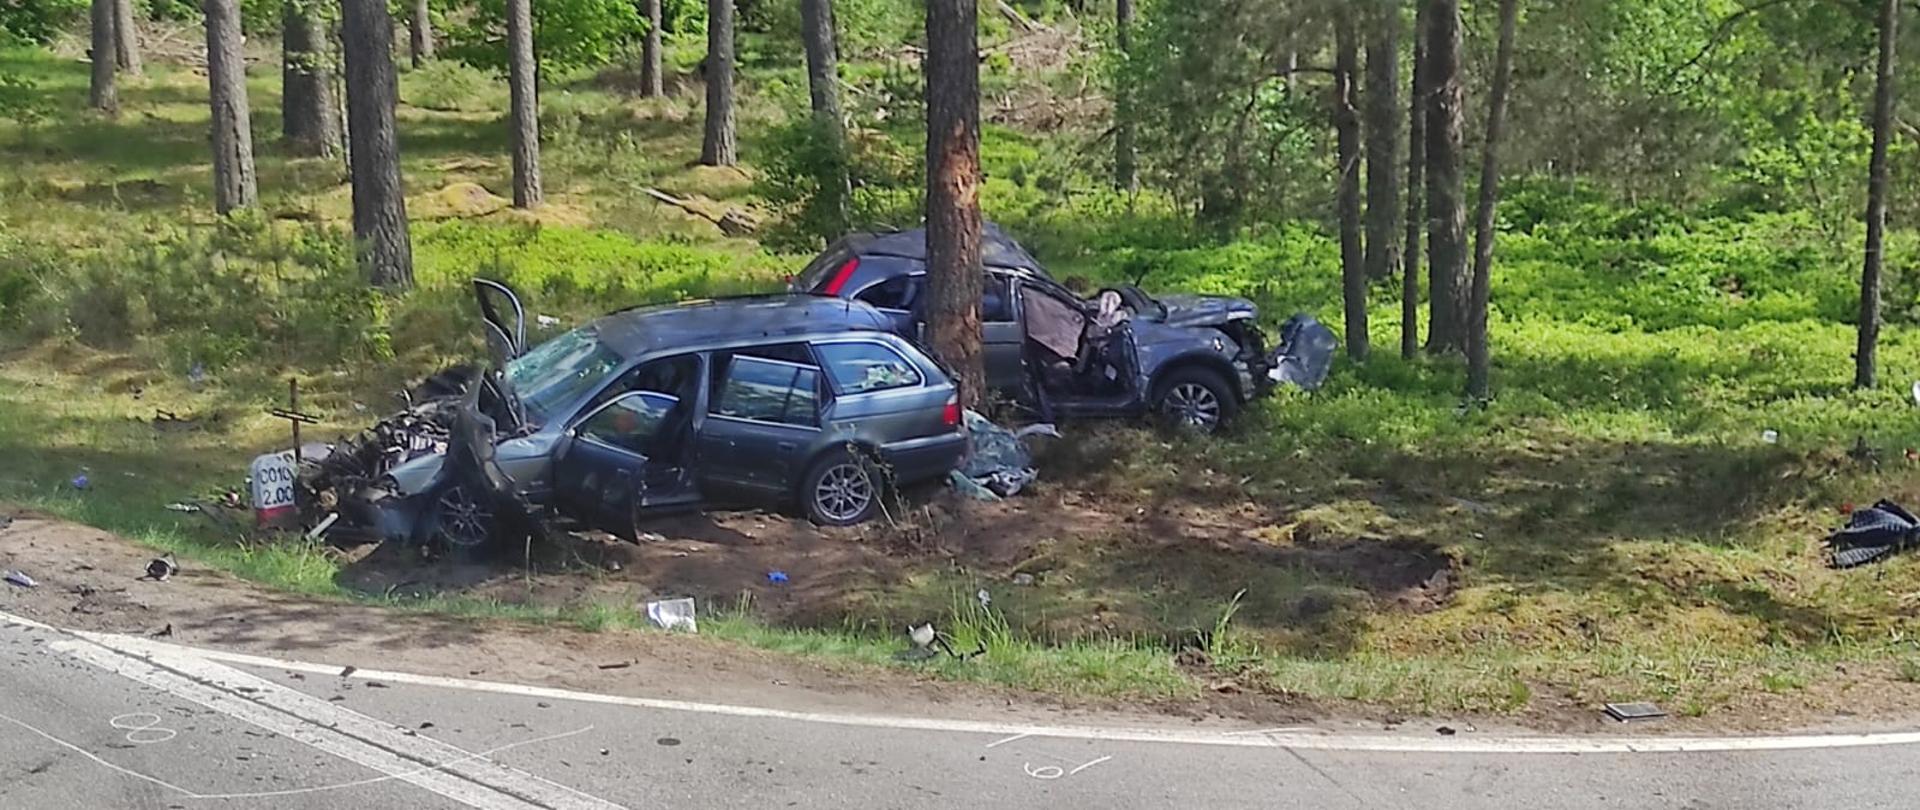 Na zdjęciu na poboczu drogi przy drzewie znajdują się dwa uszkodzone pojazdy osobowe koloru szarego z widocznymi uszkodzeniami.